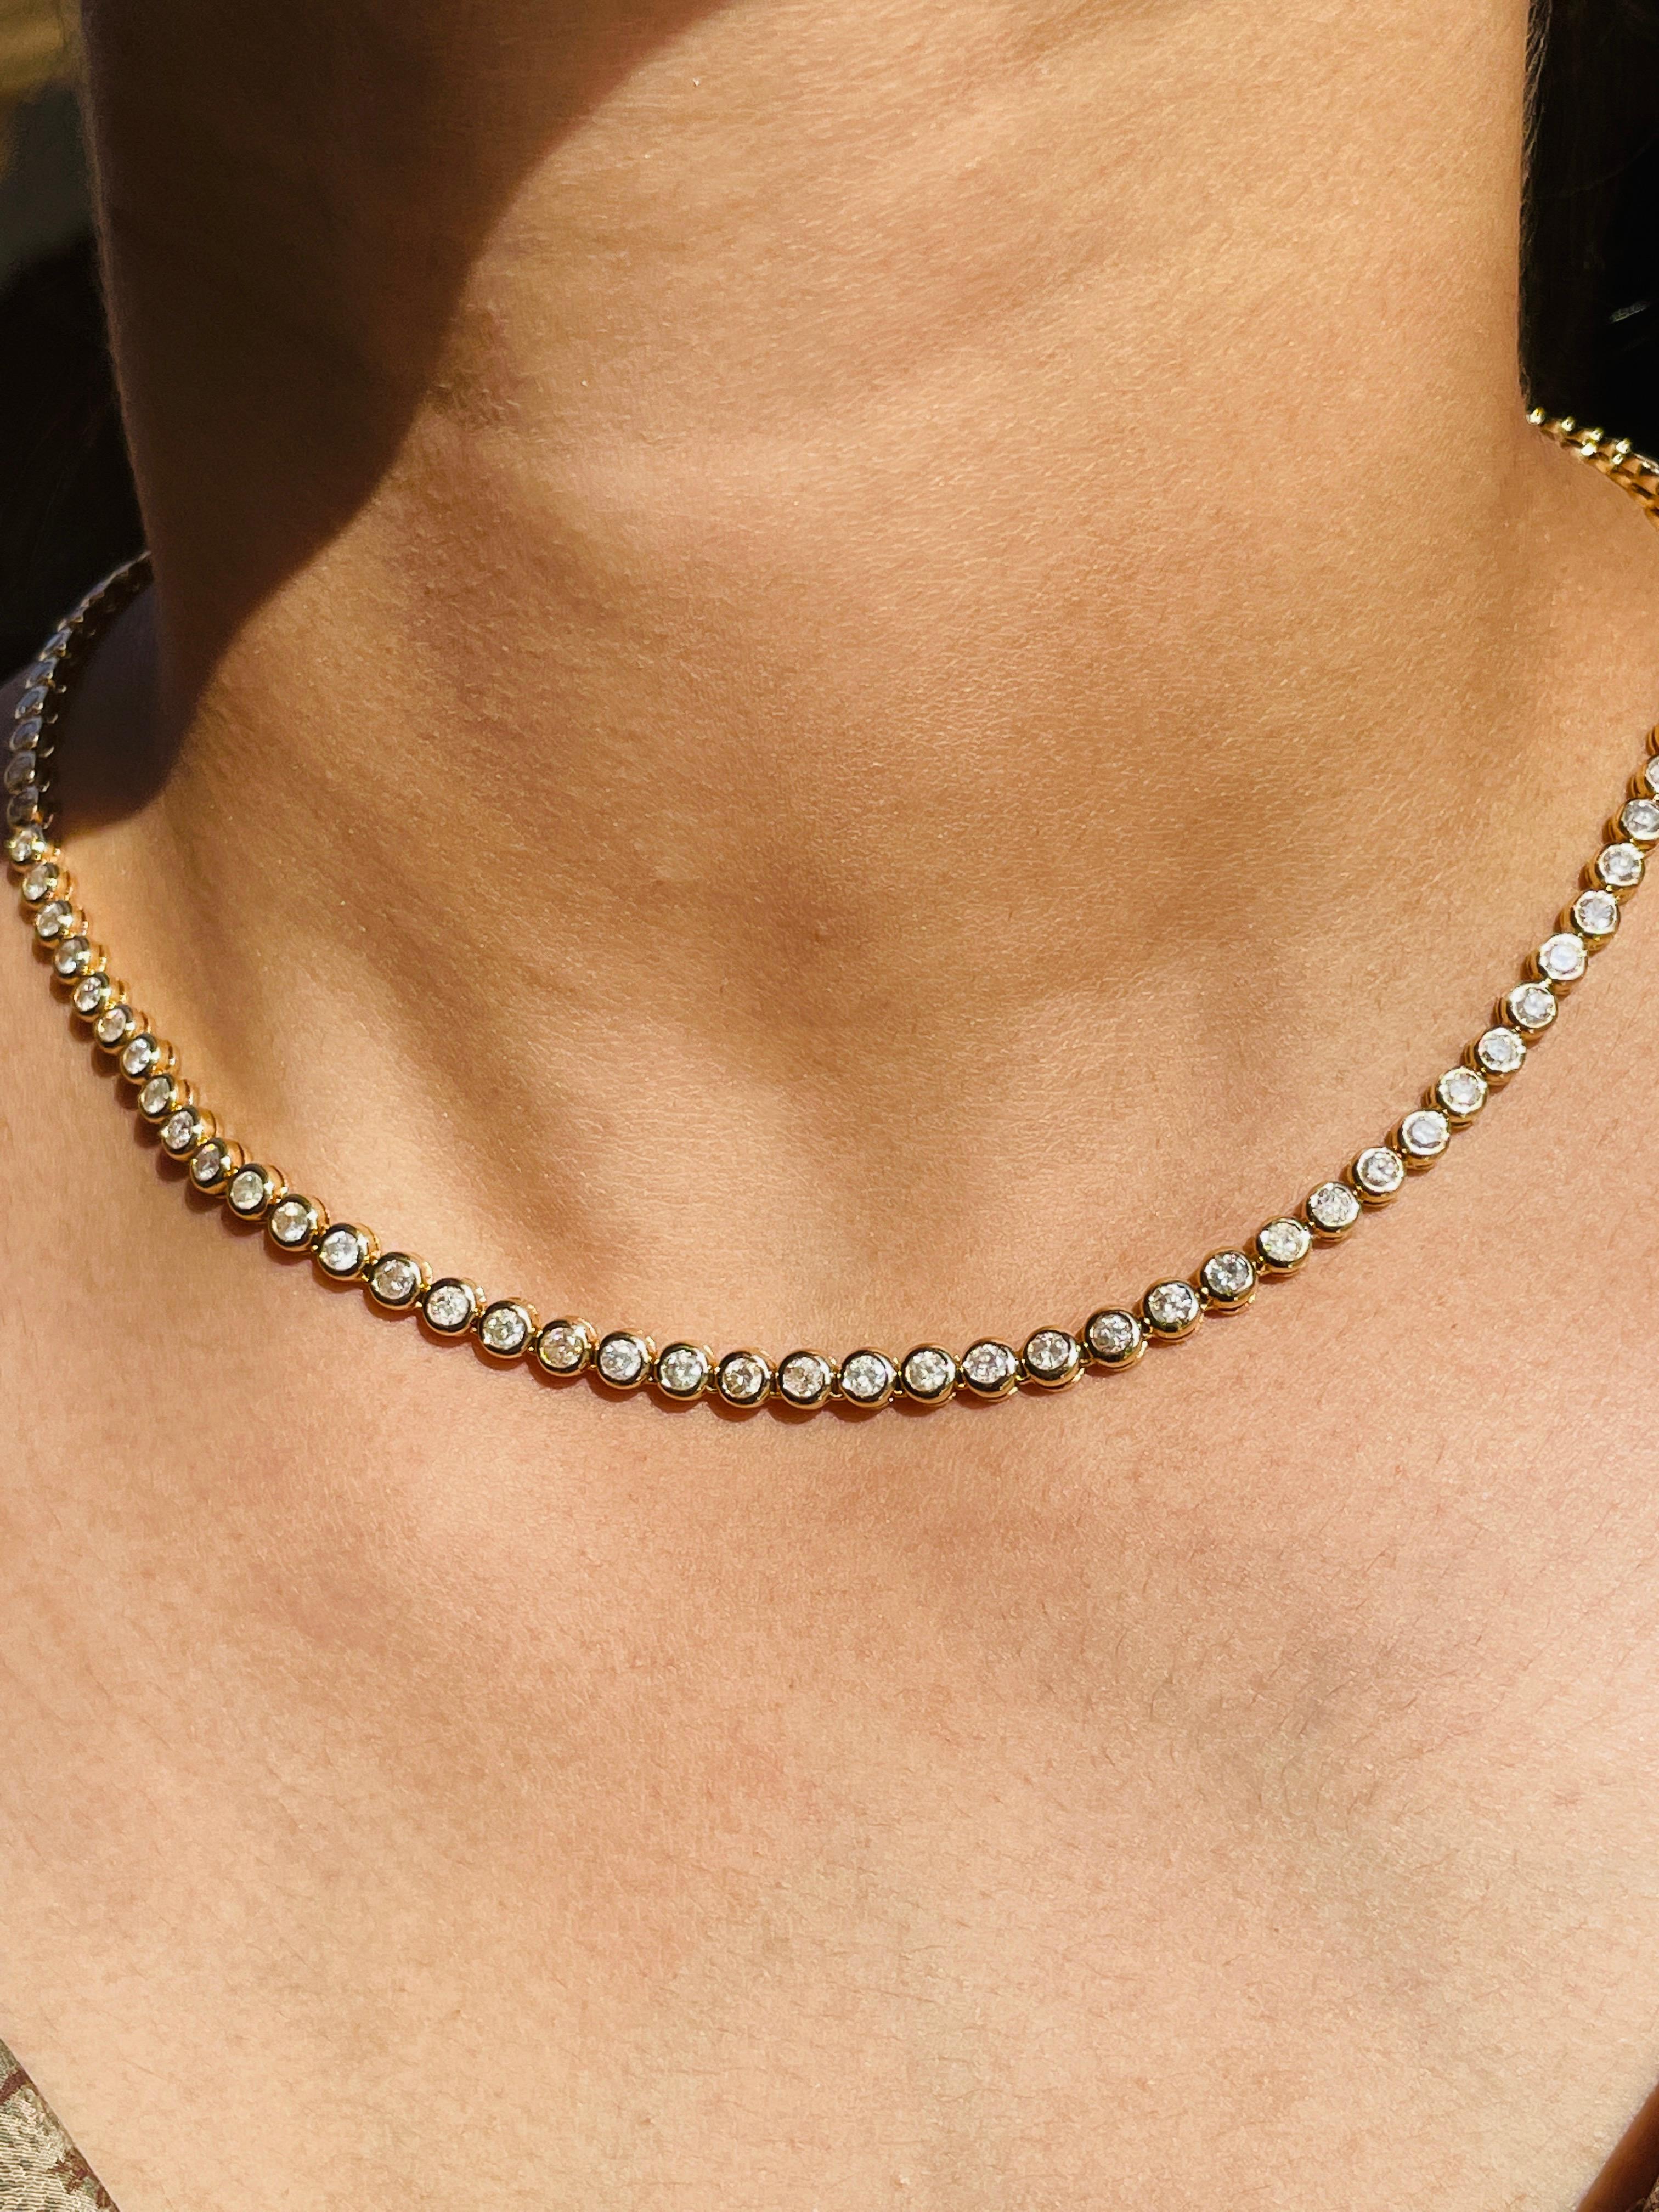 7,35 Karat Diamant-Tennis-Halskette Geschenk für Mama in 18K Gold mit rundem Diamanten von 7,35 Karat besetzt. Dieses atemberaubende Schmuckstück wertet einen Freizeitlook oder ein elegantes Outfit sofort auf. 
Der April-Geburtsstein Diamant bringt